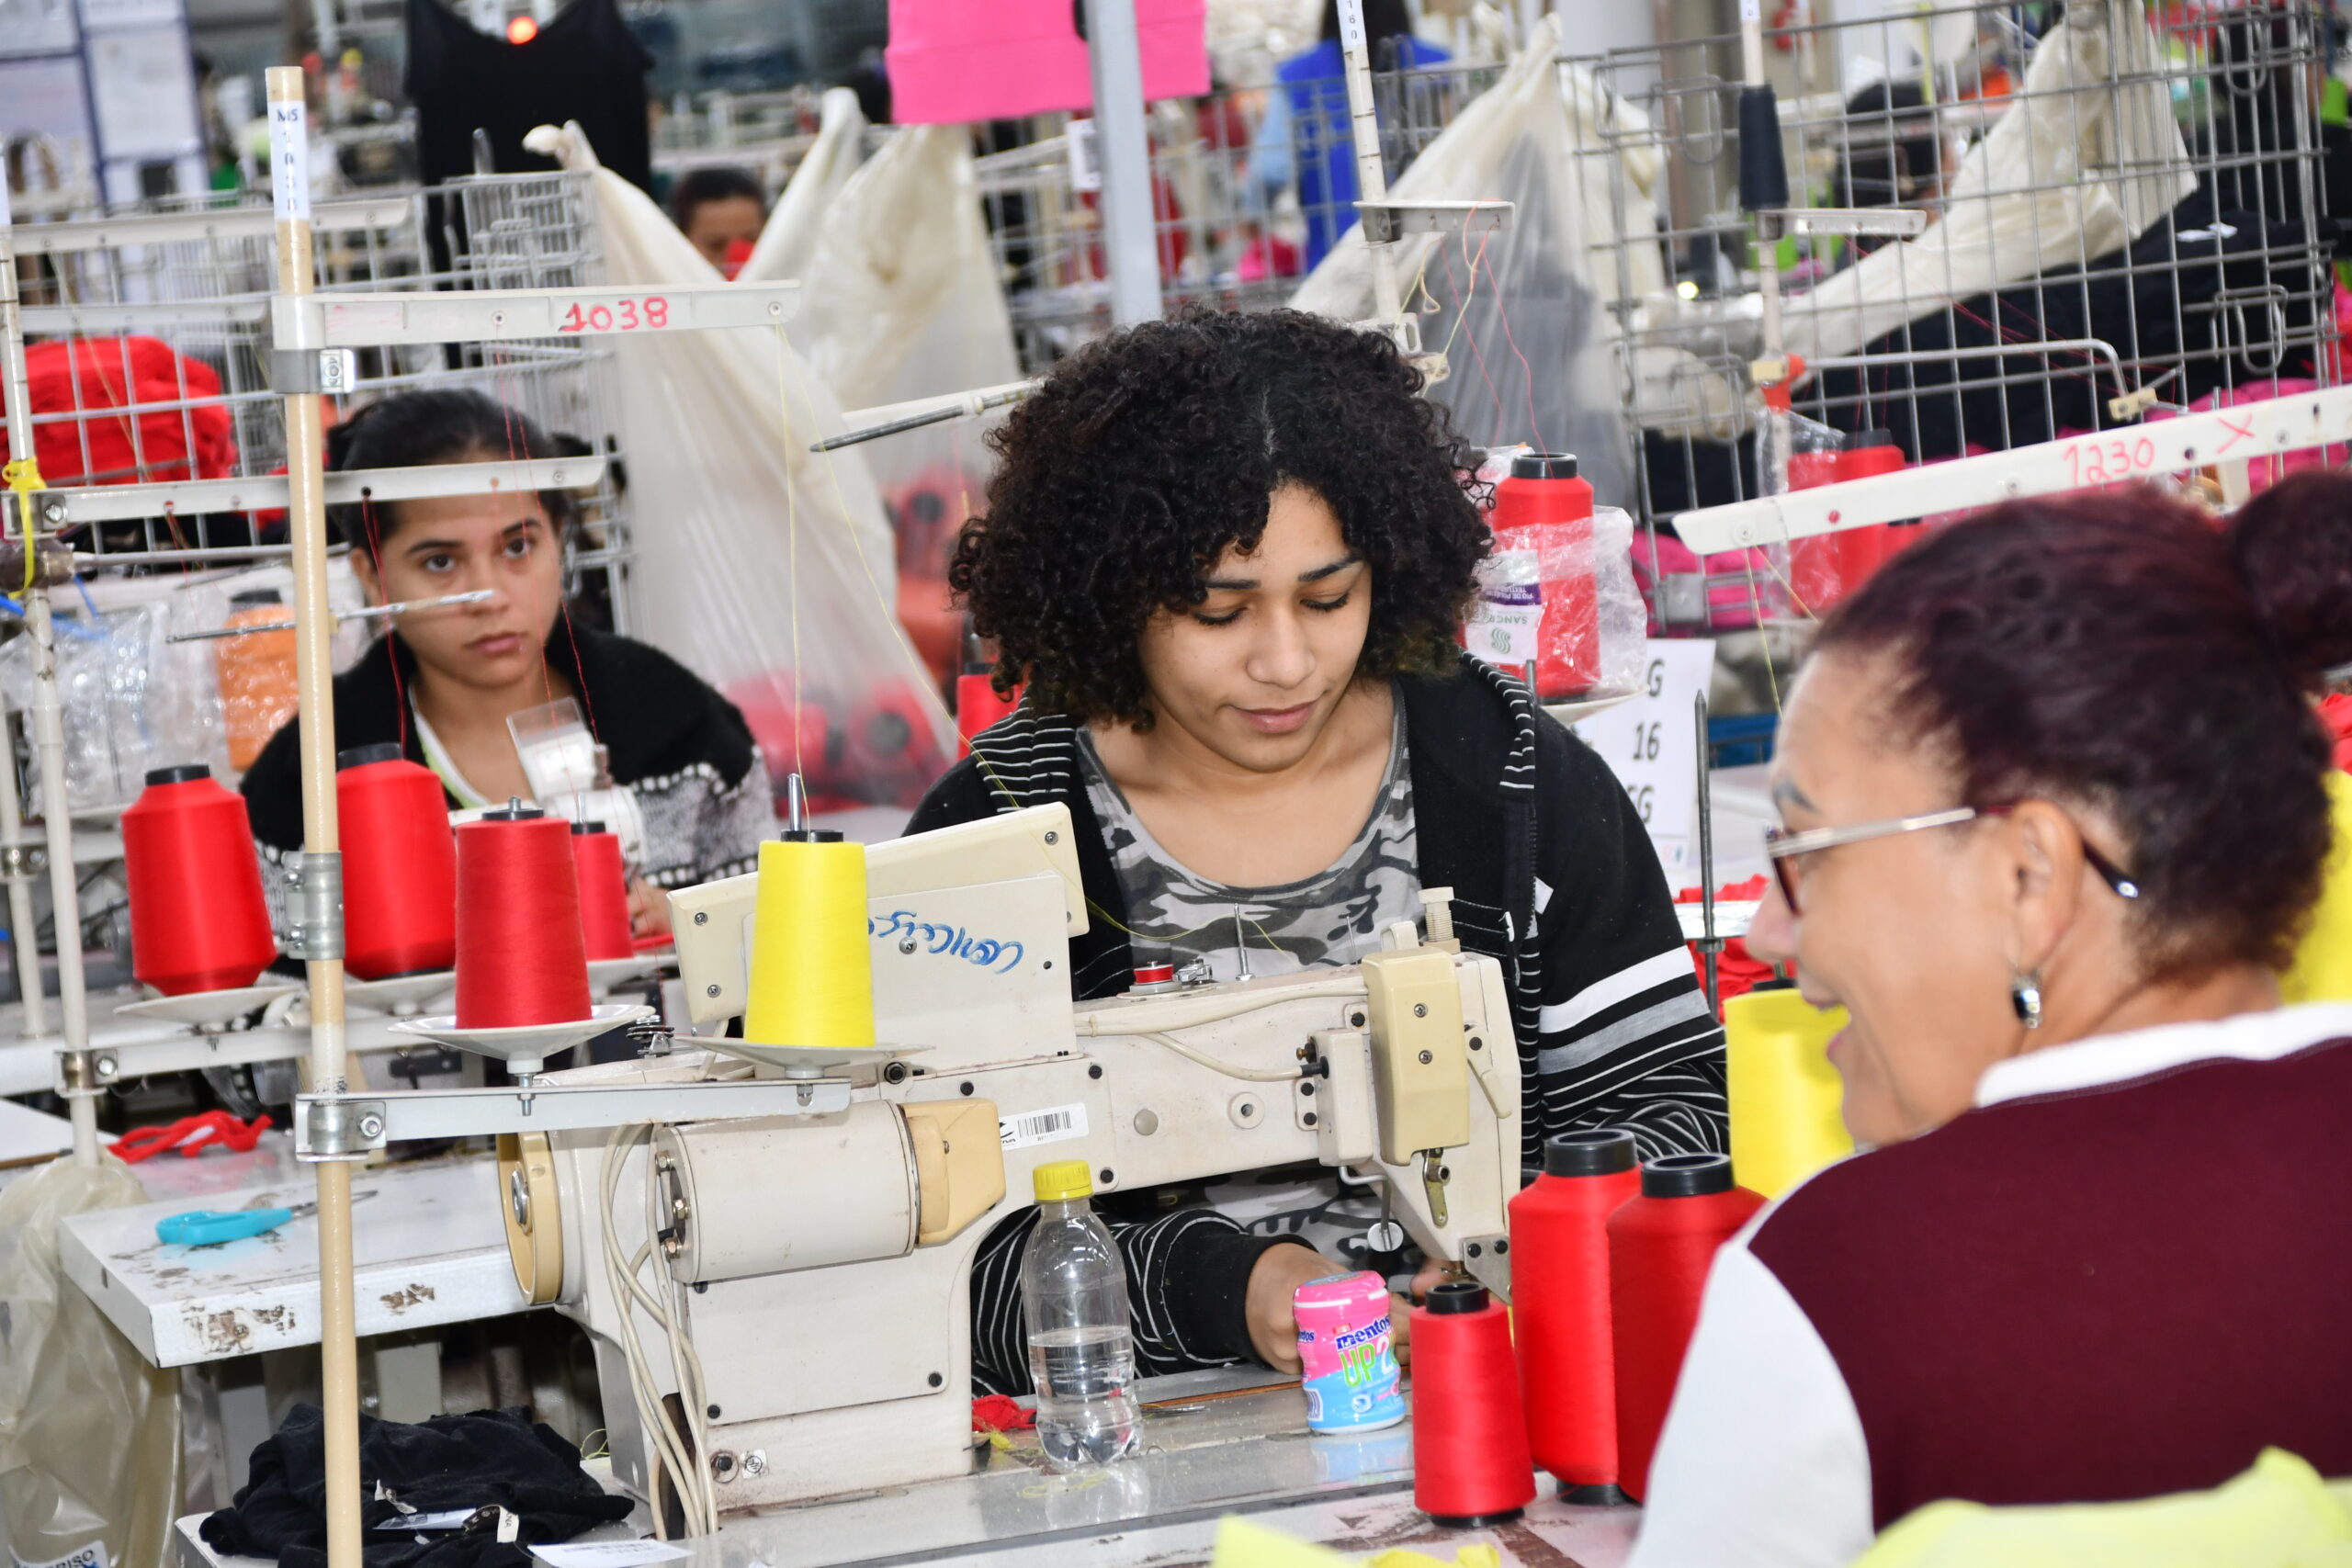 sidagro1 scaled Codecon aprova projetos de indústria têxtil que atende grandes marcas no país